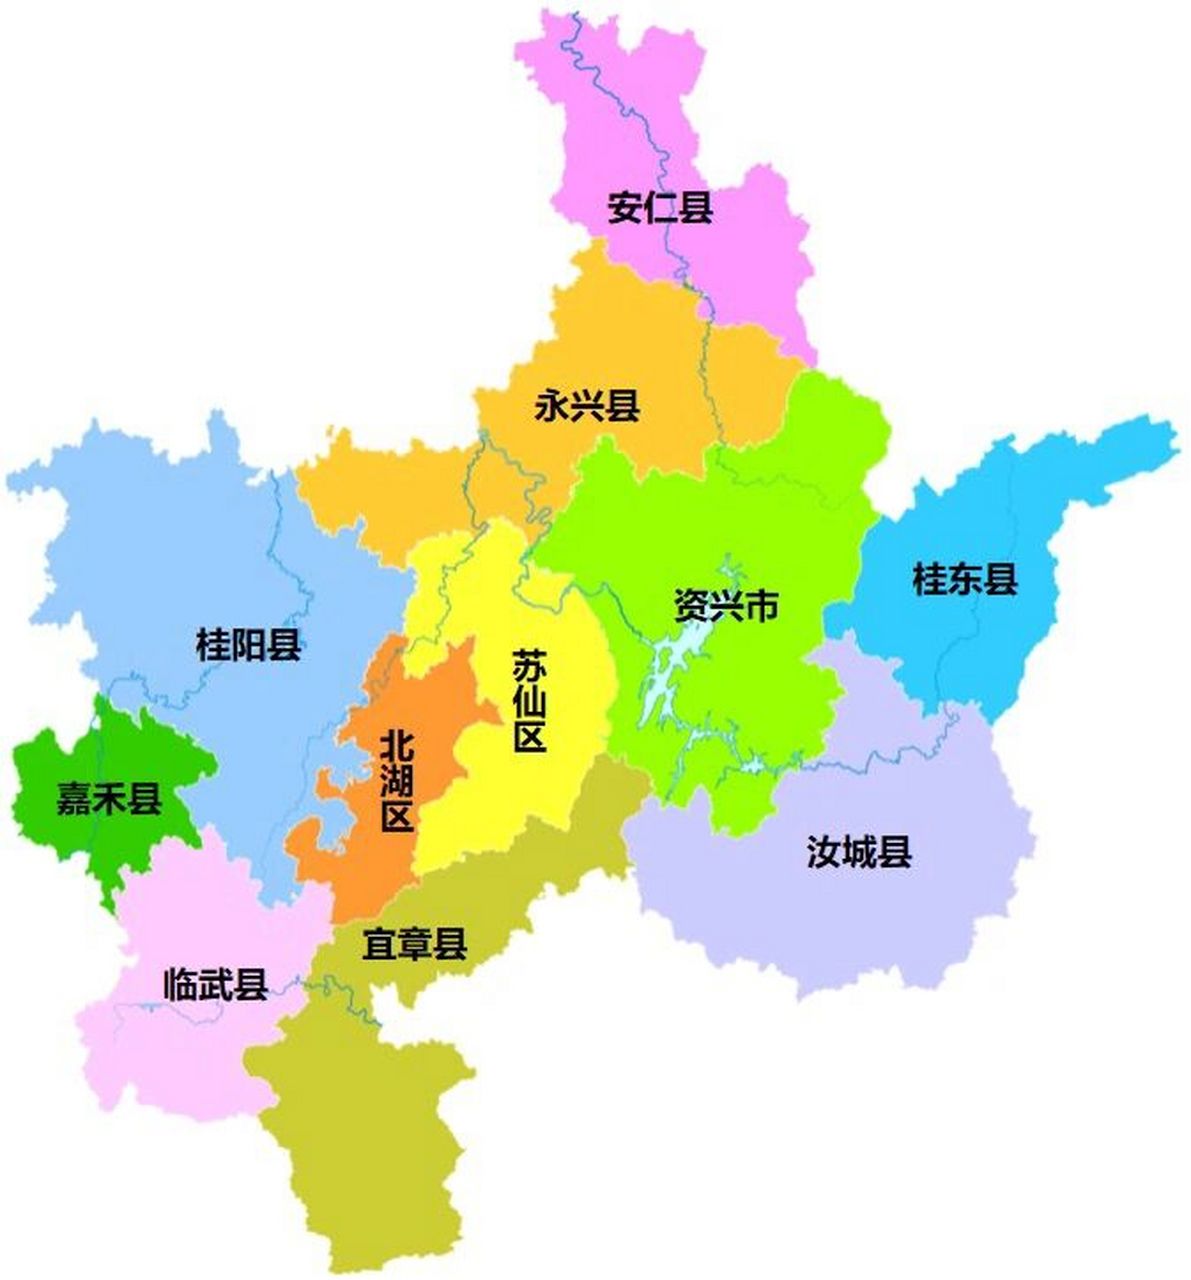 郴州行政区划 郴州市,湖南省辖地级市,总面积为19387平方公里,常住